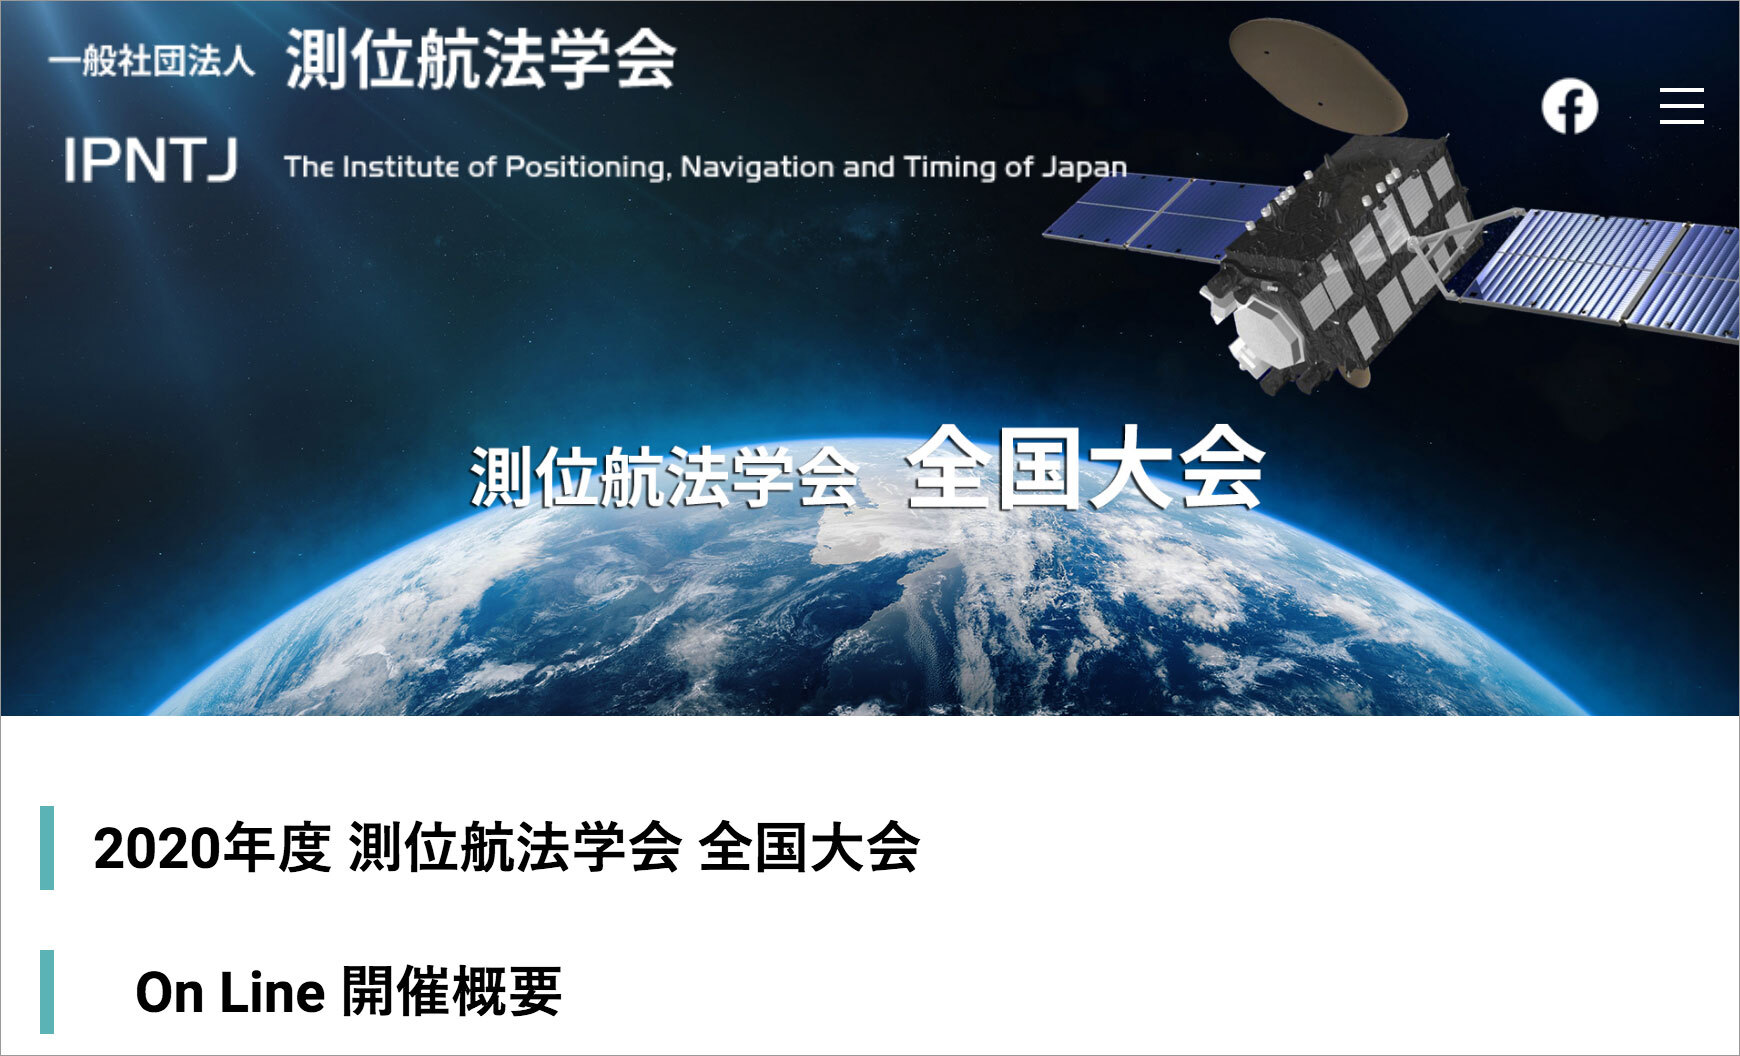 測位航法学会 年全国大会をオンラインで開催 ニュース アーカイブ みちびき 準天頂衛星システム Qzss 公式サイト 内閣府